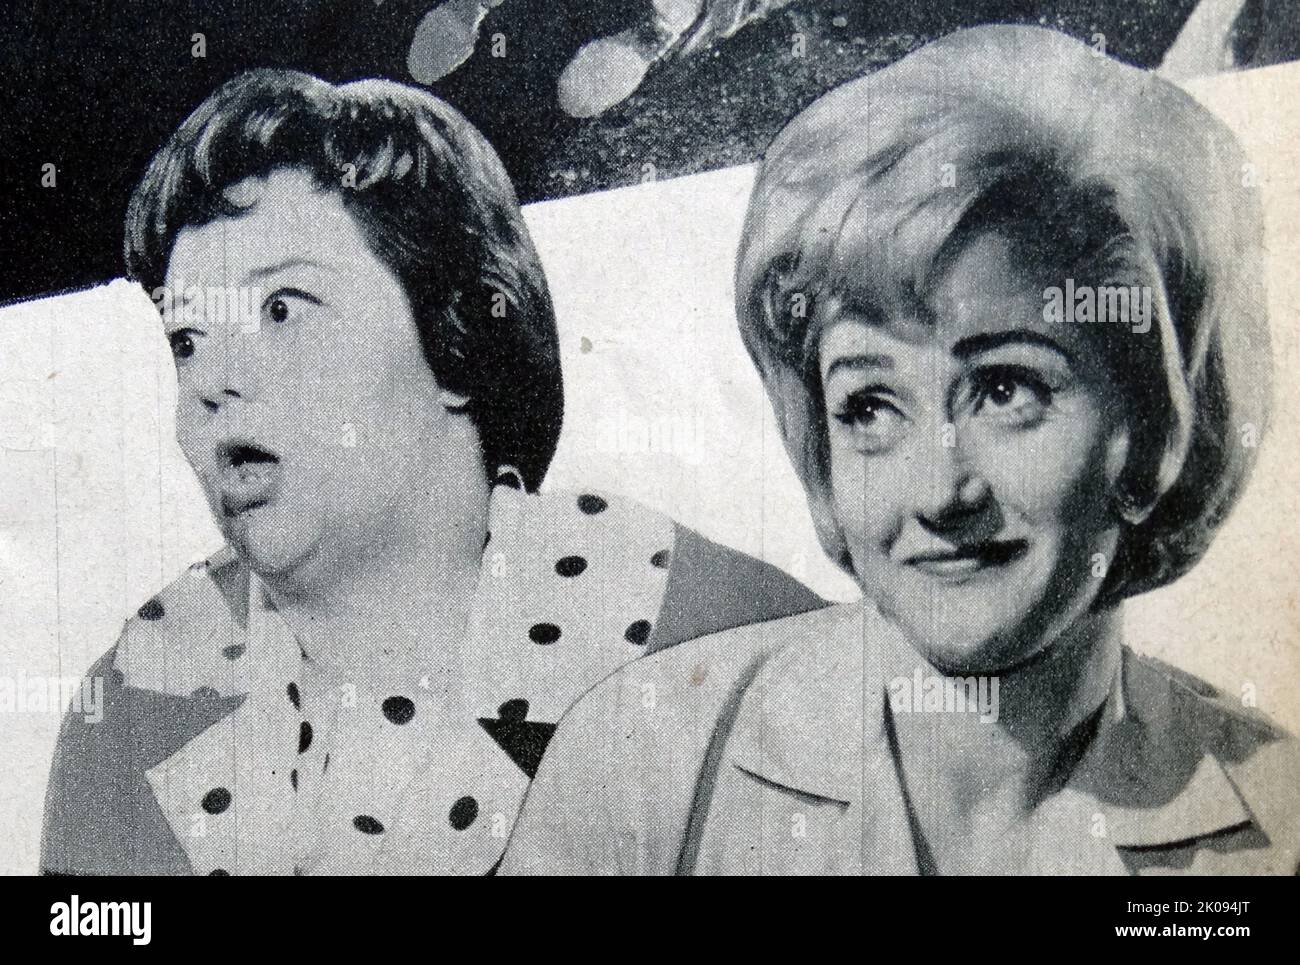 Zeitungsbericht zum Film Carry on Cabby aus dem Jahr 1963. Fotos von Hattie Jacques und Joan Simms. Stockfoto